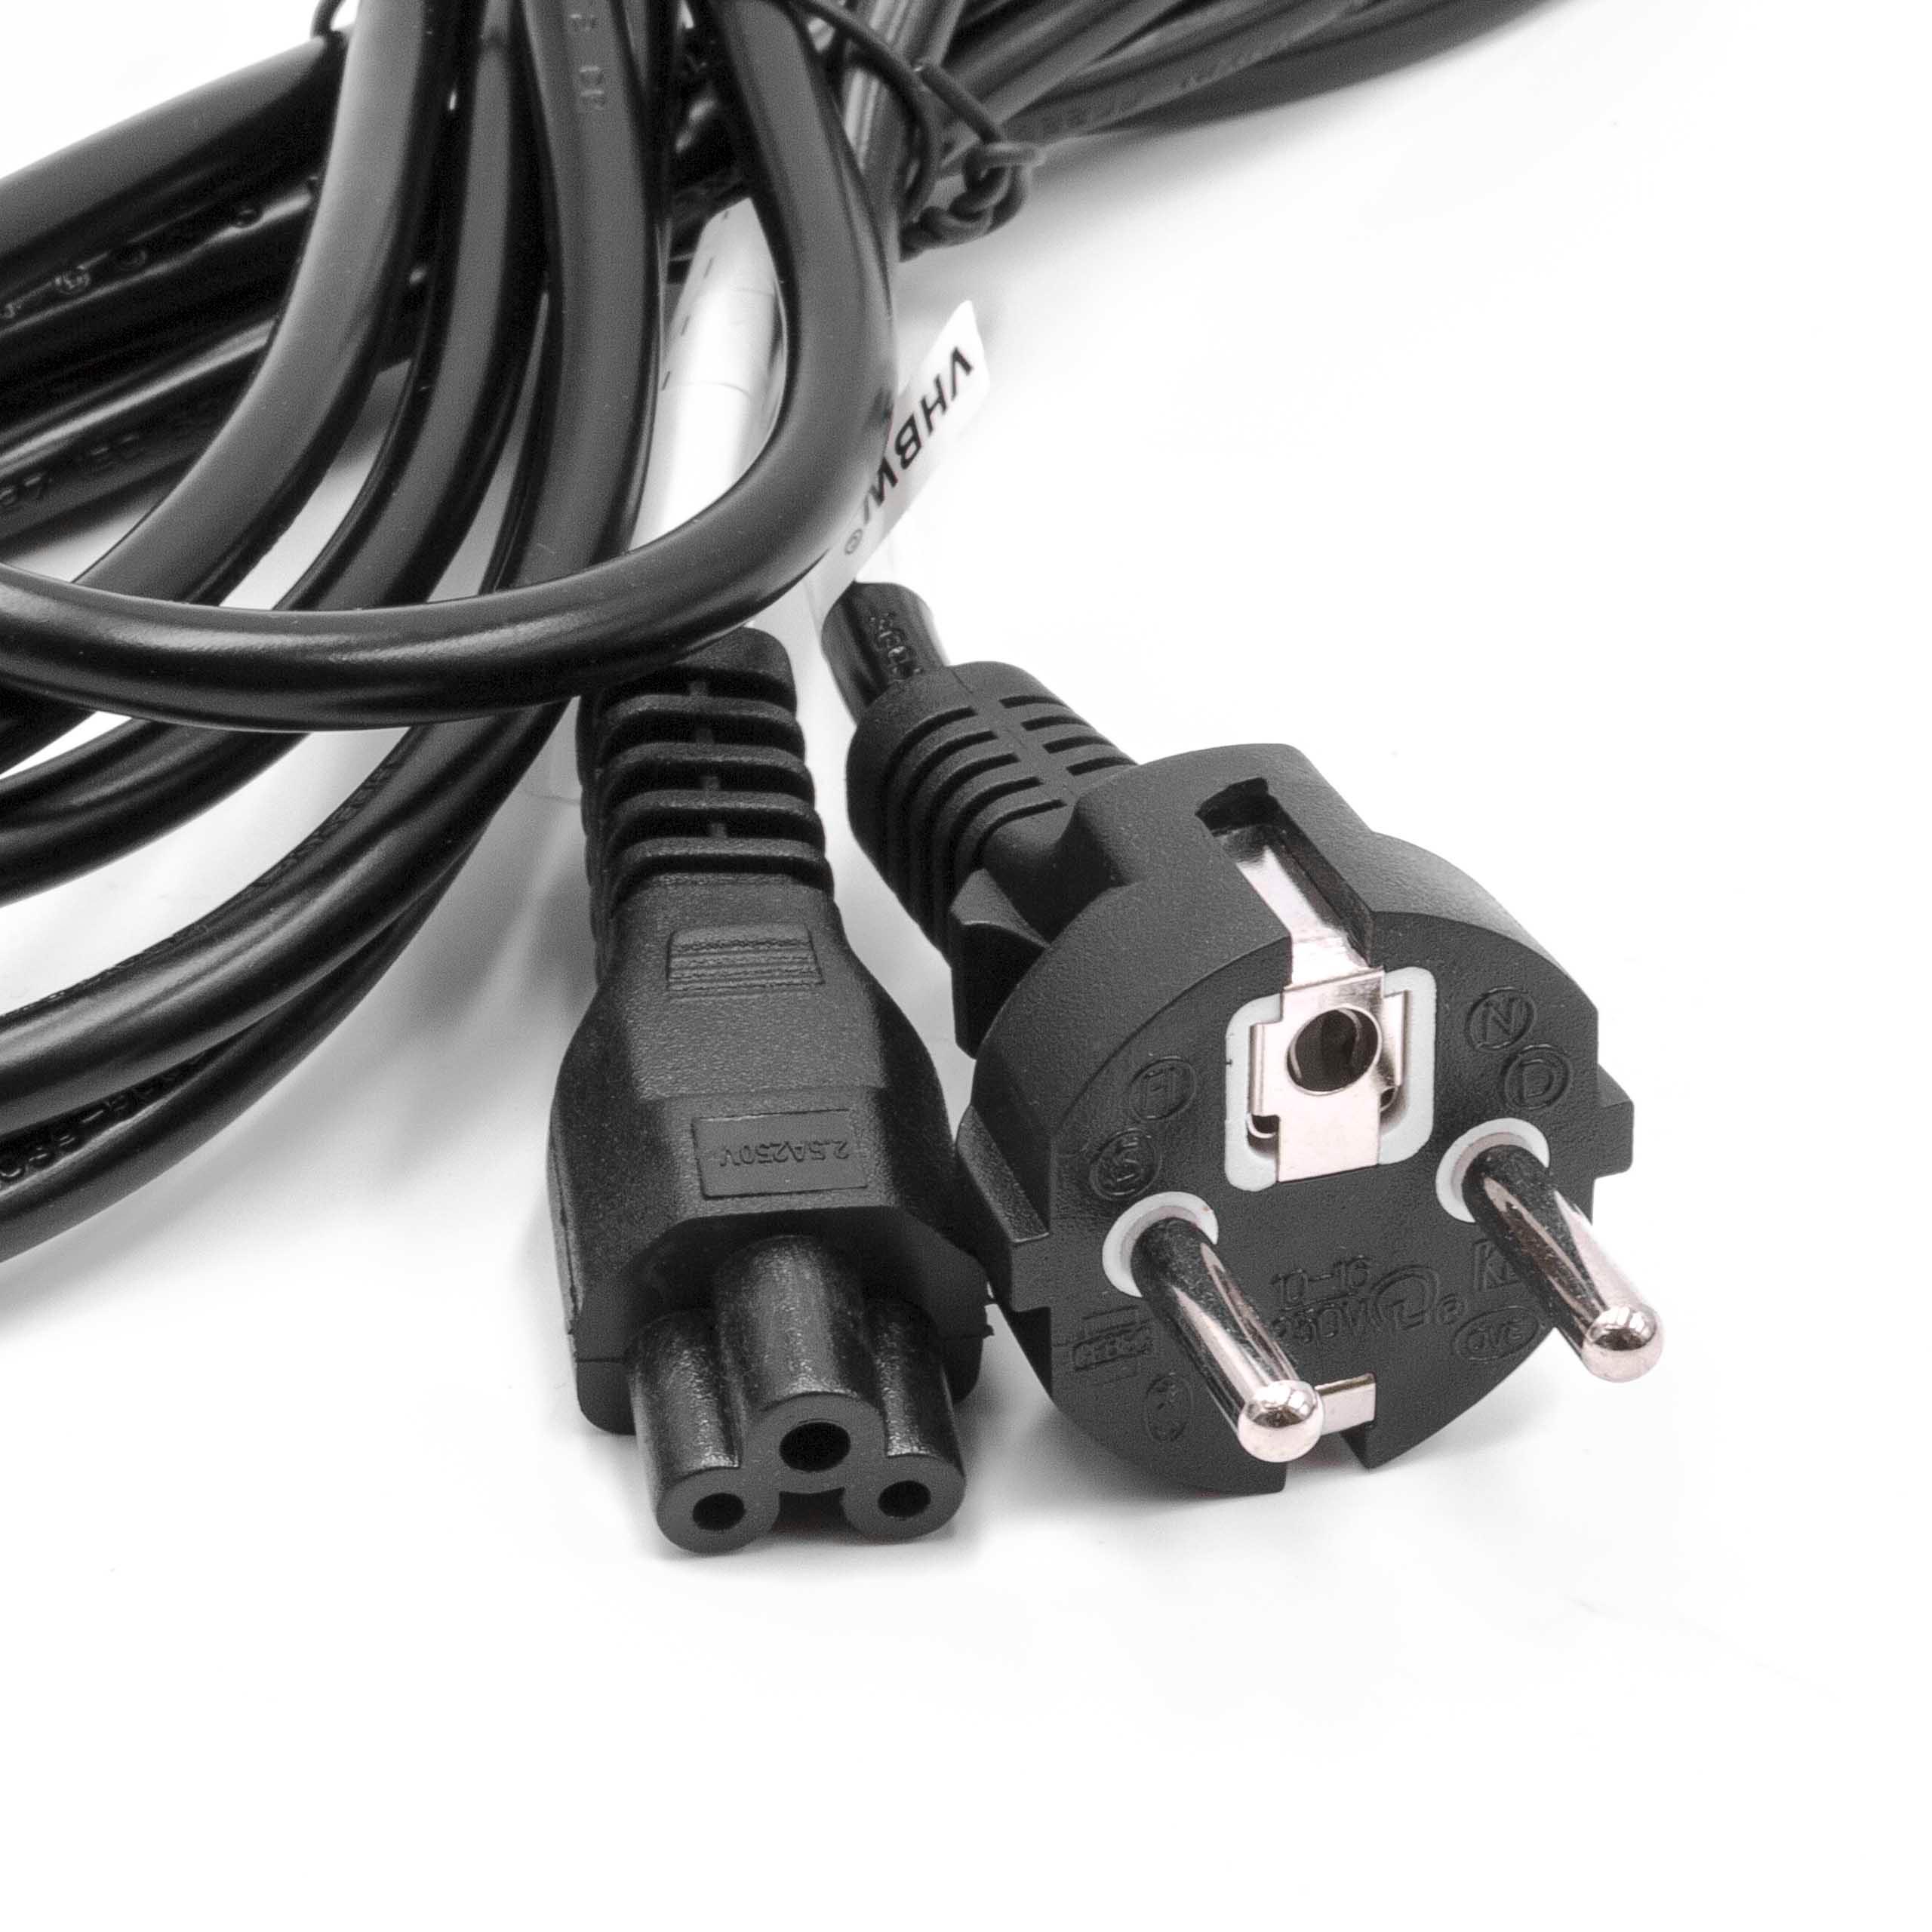 Cable de red C5 euroconector compatible con robot aspirador - 3 m